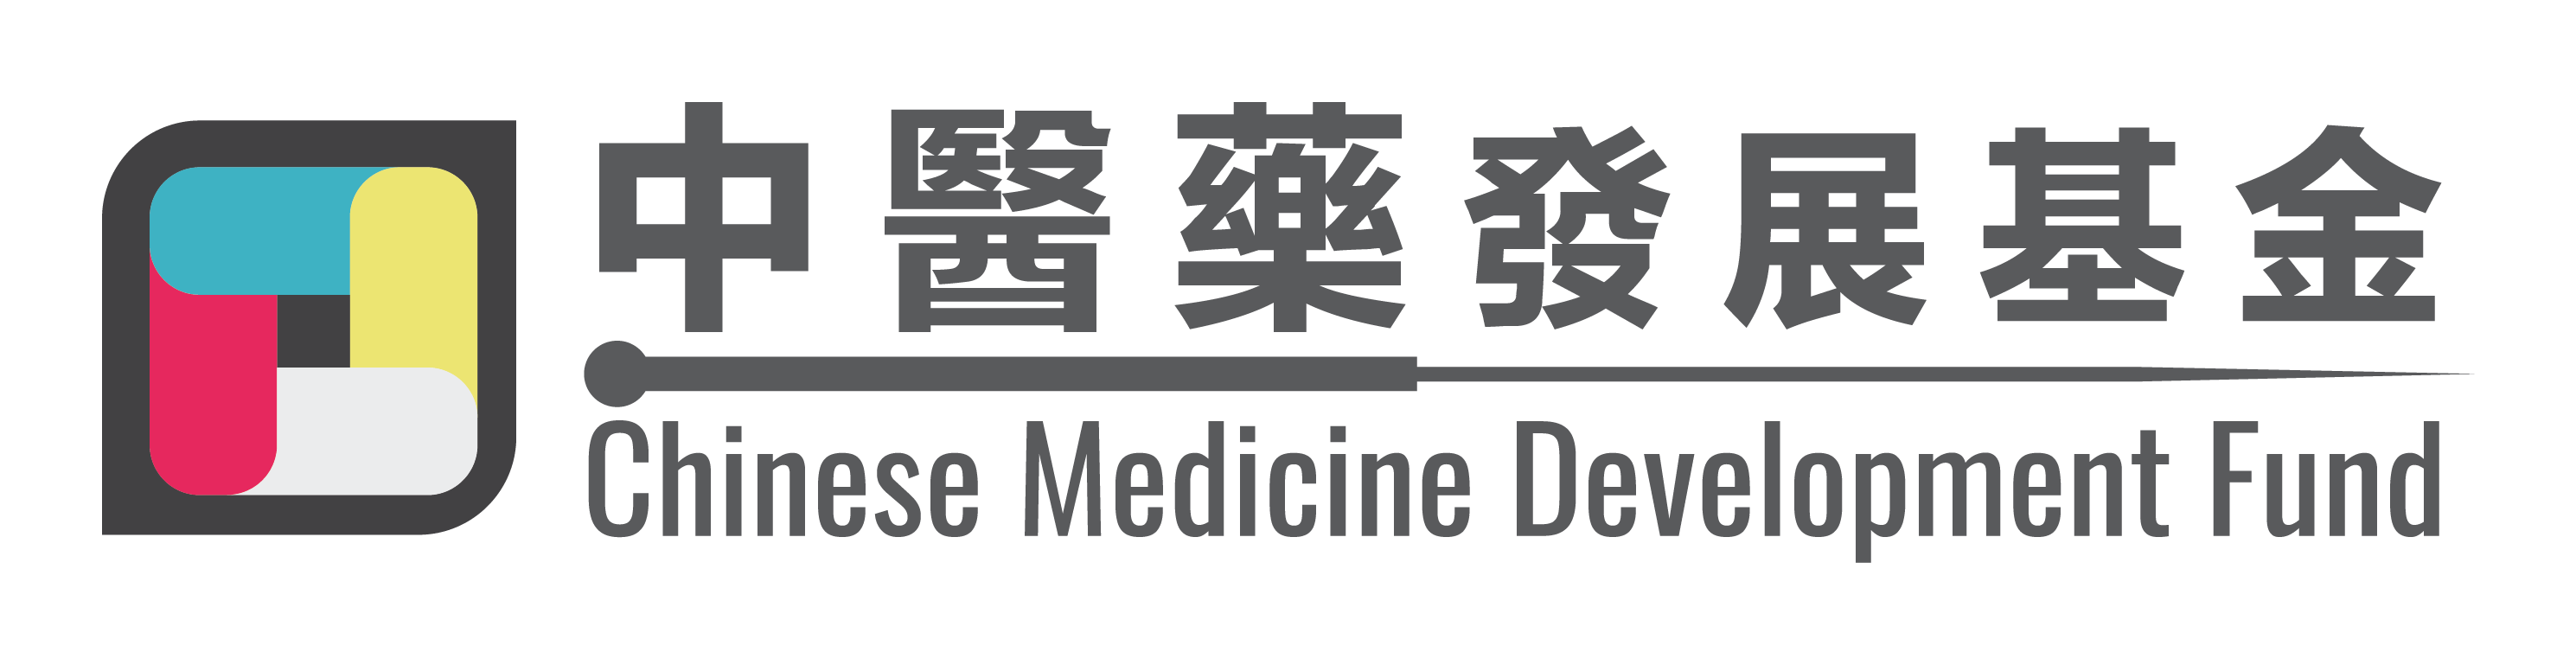 Chinese Medicine Development Fund (CMDF) logo